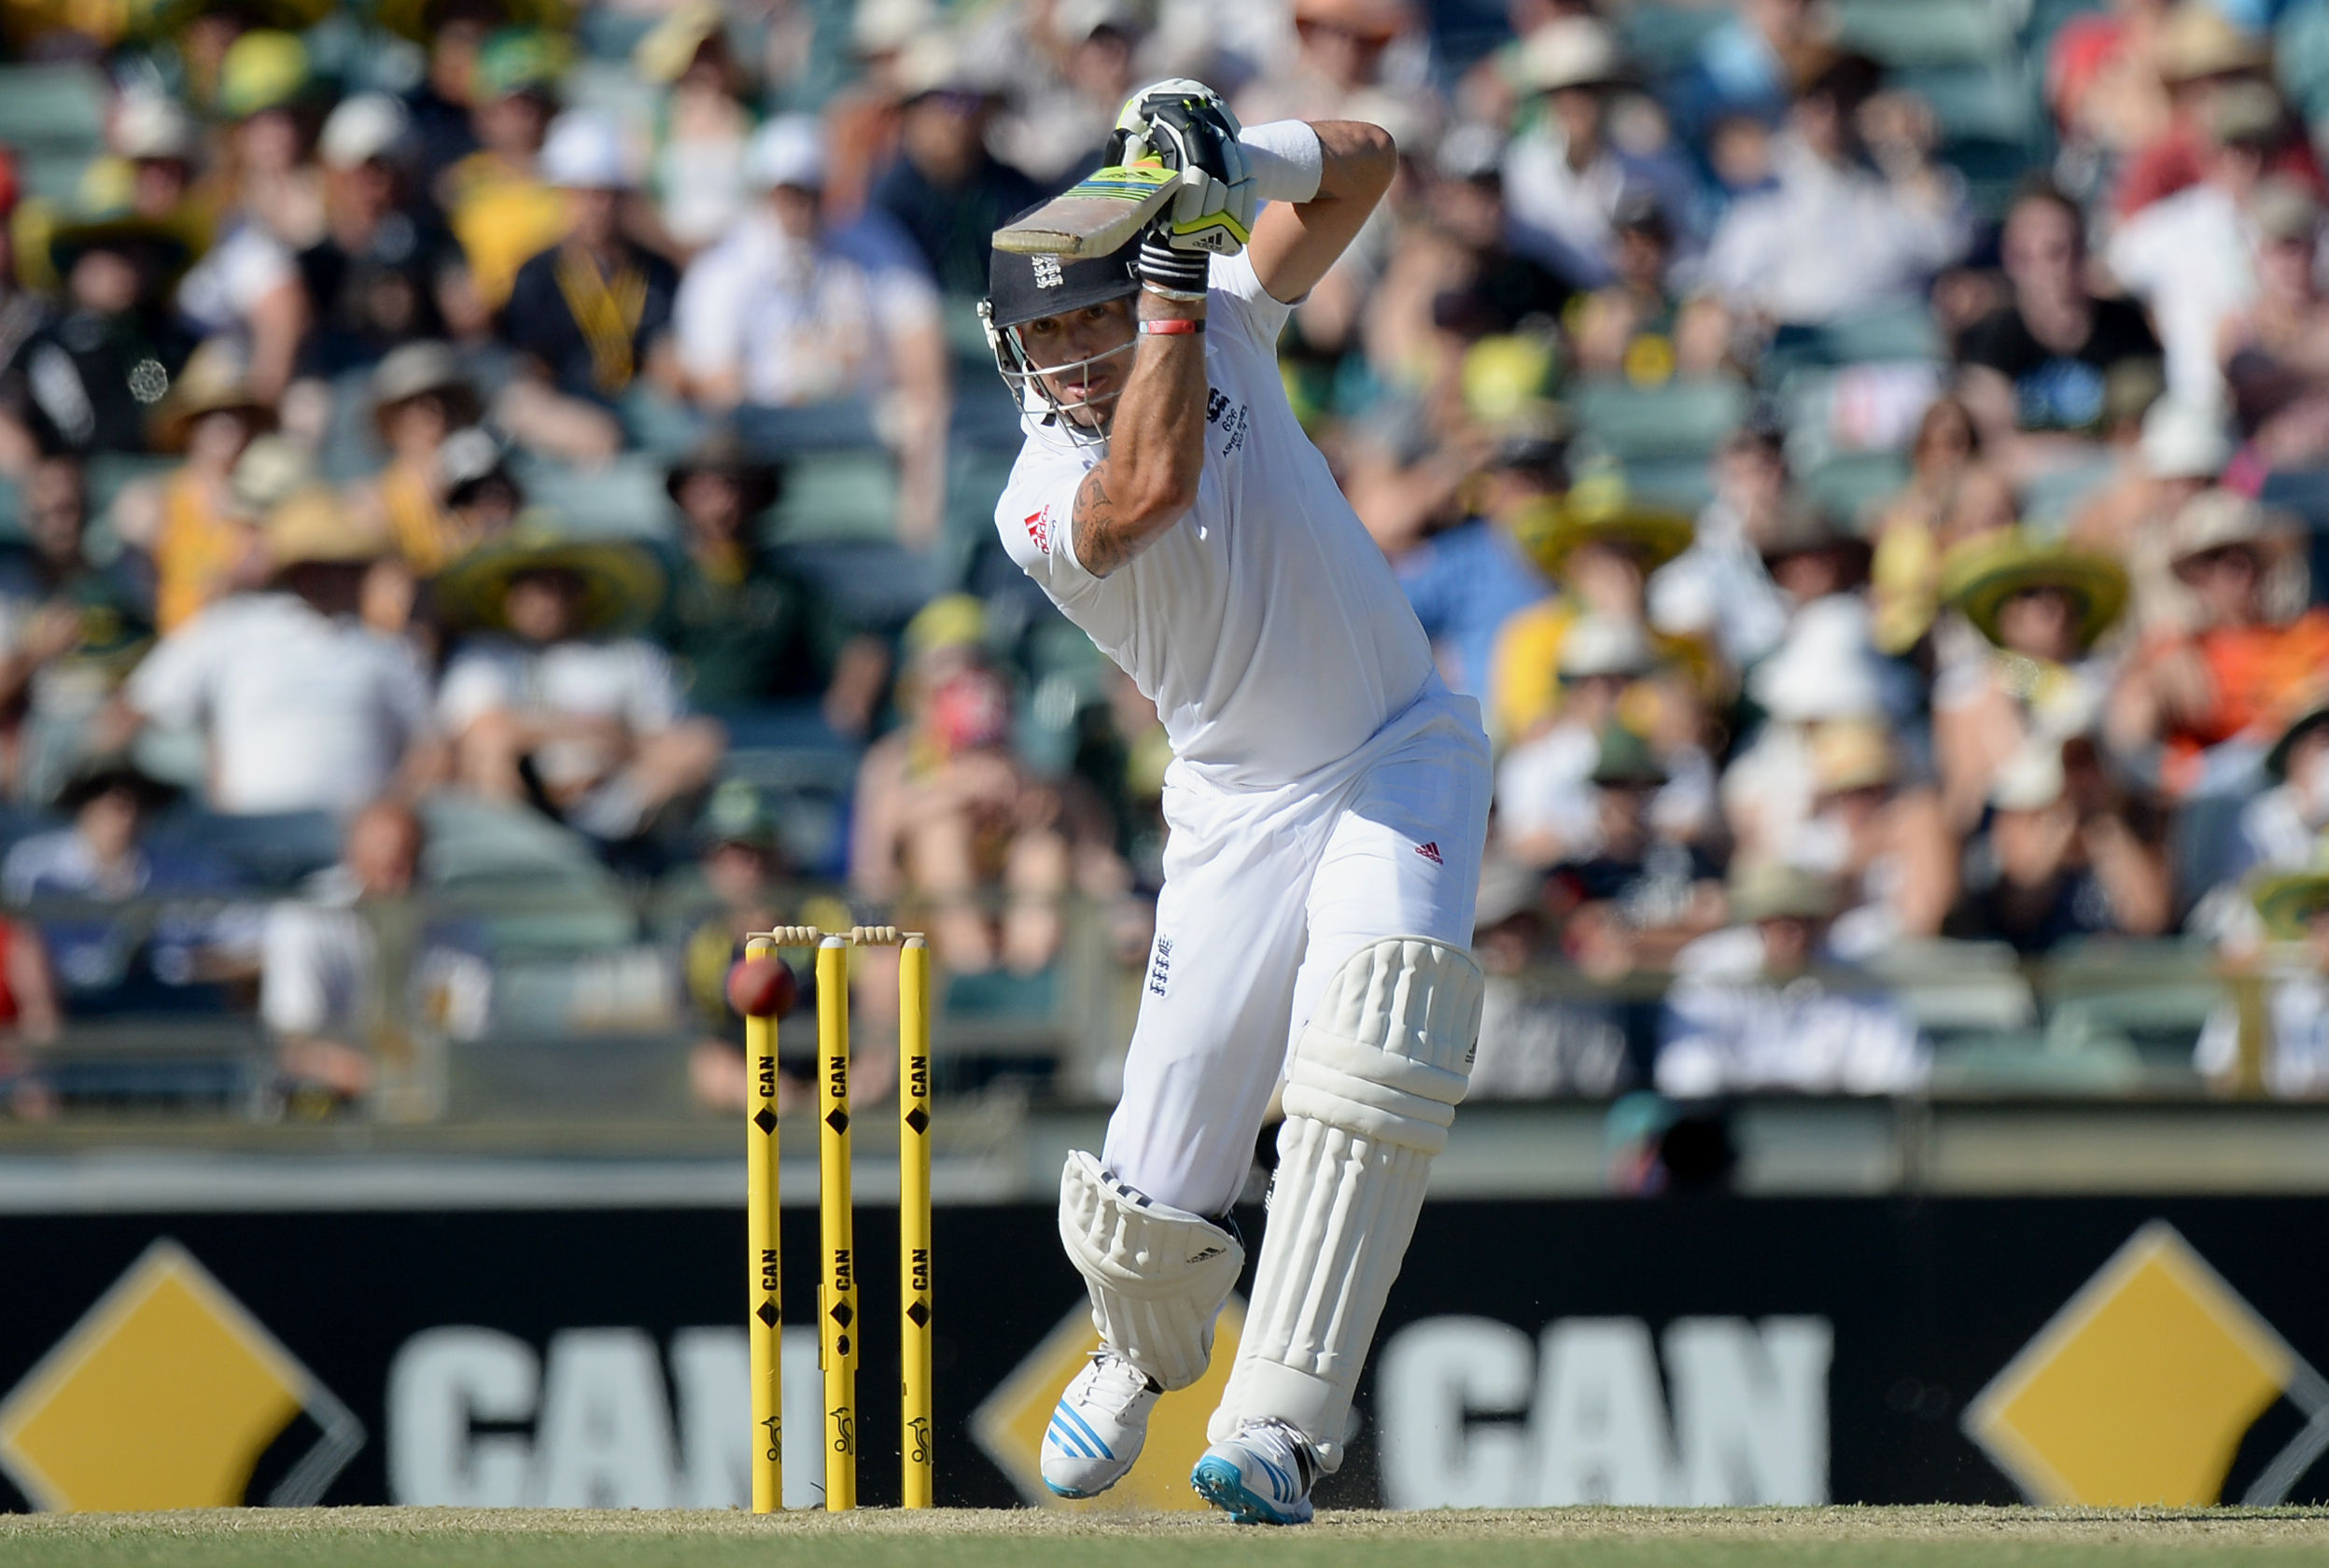 Pietersen had a Test match average of 47.28